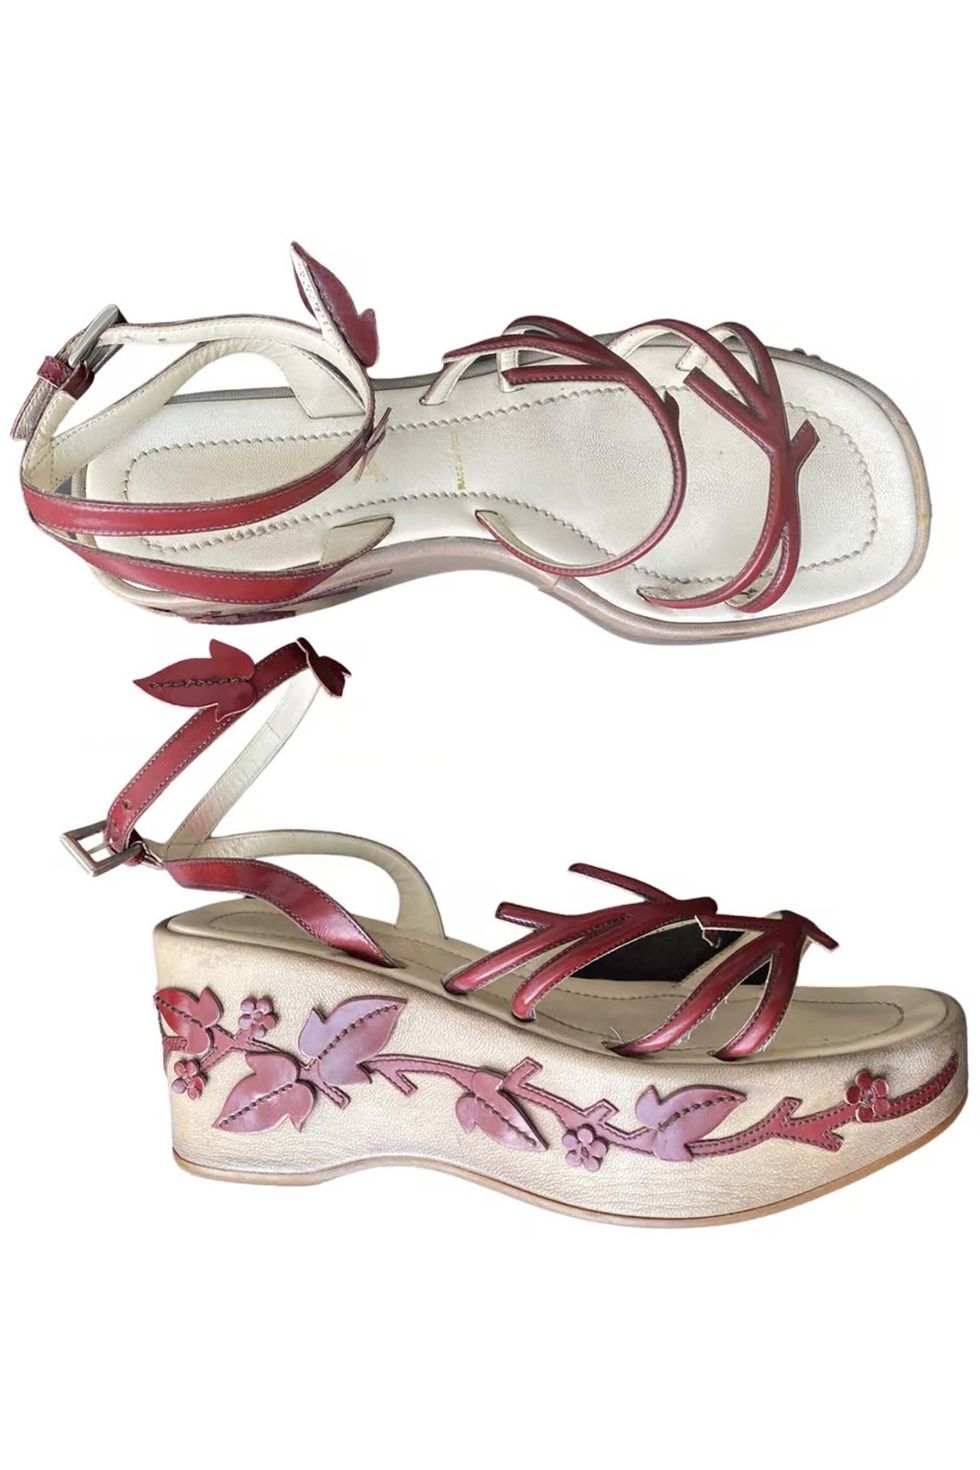 Vine sandals, spring/summer 1997